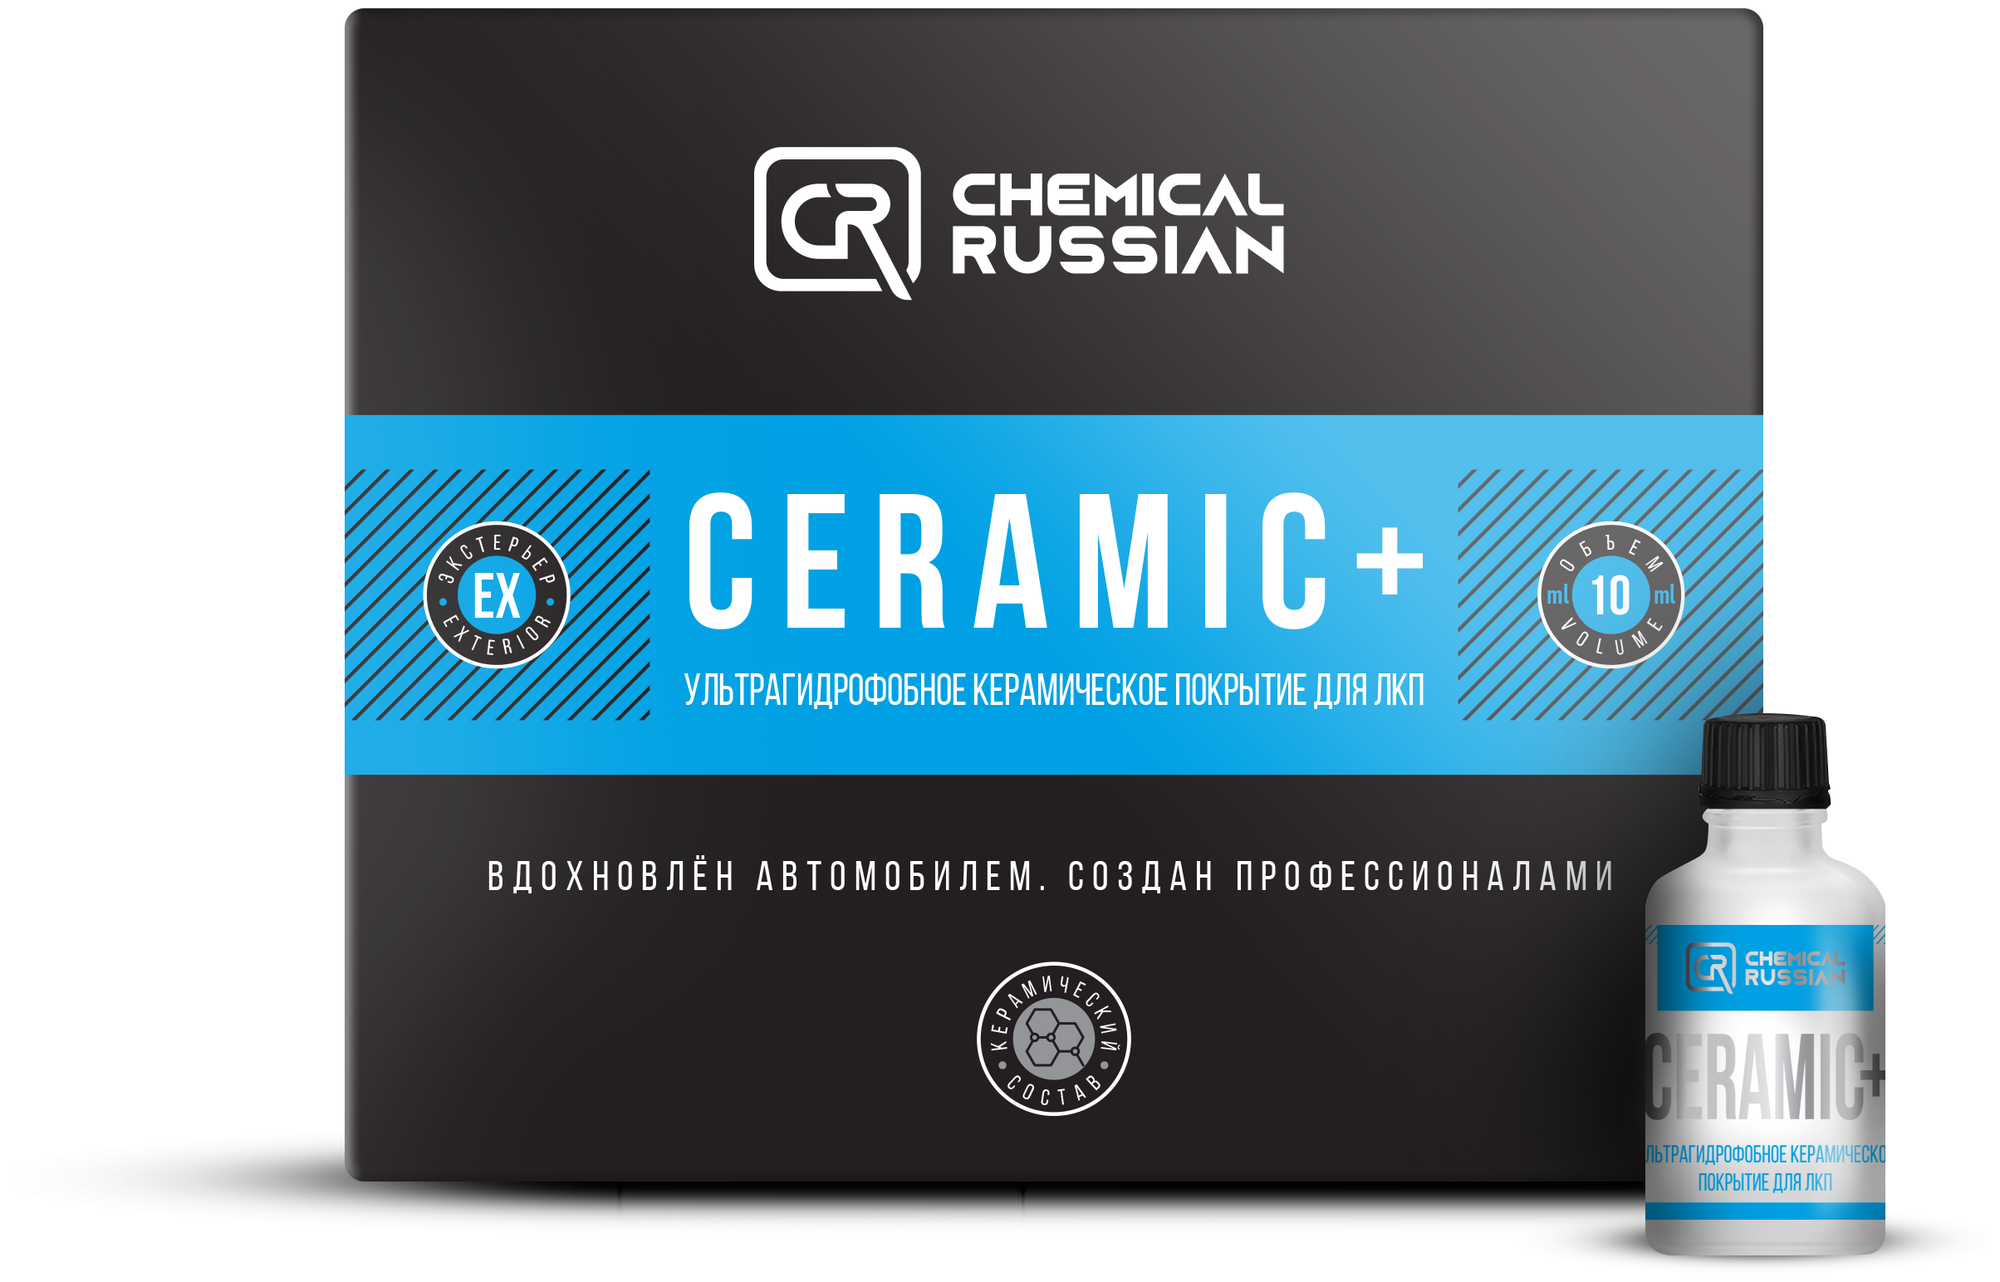 Керамическое покрытие для кузова 9H с увеличенным сроком службы Chemical Russian Ceramic+, 10мл